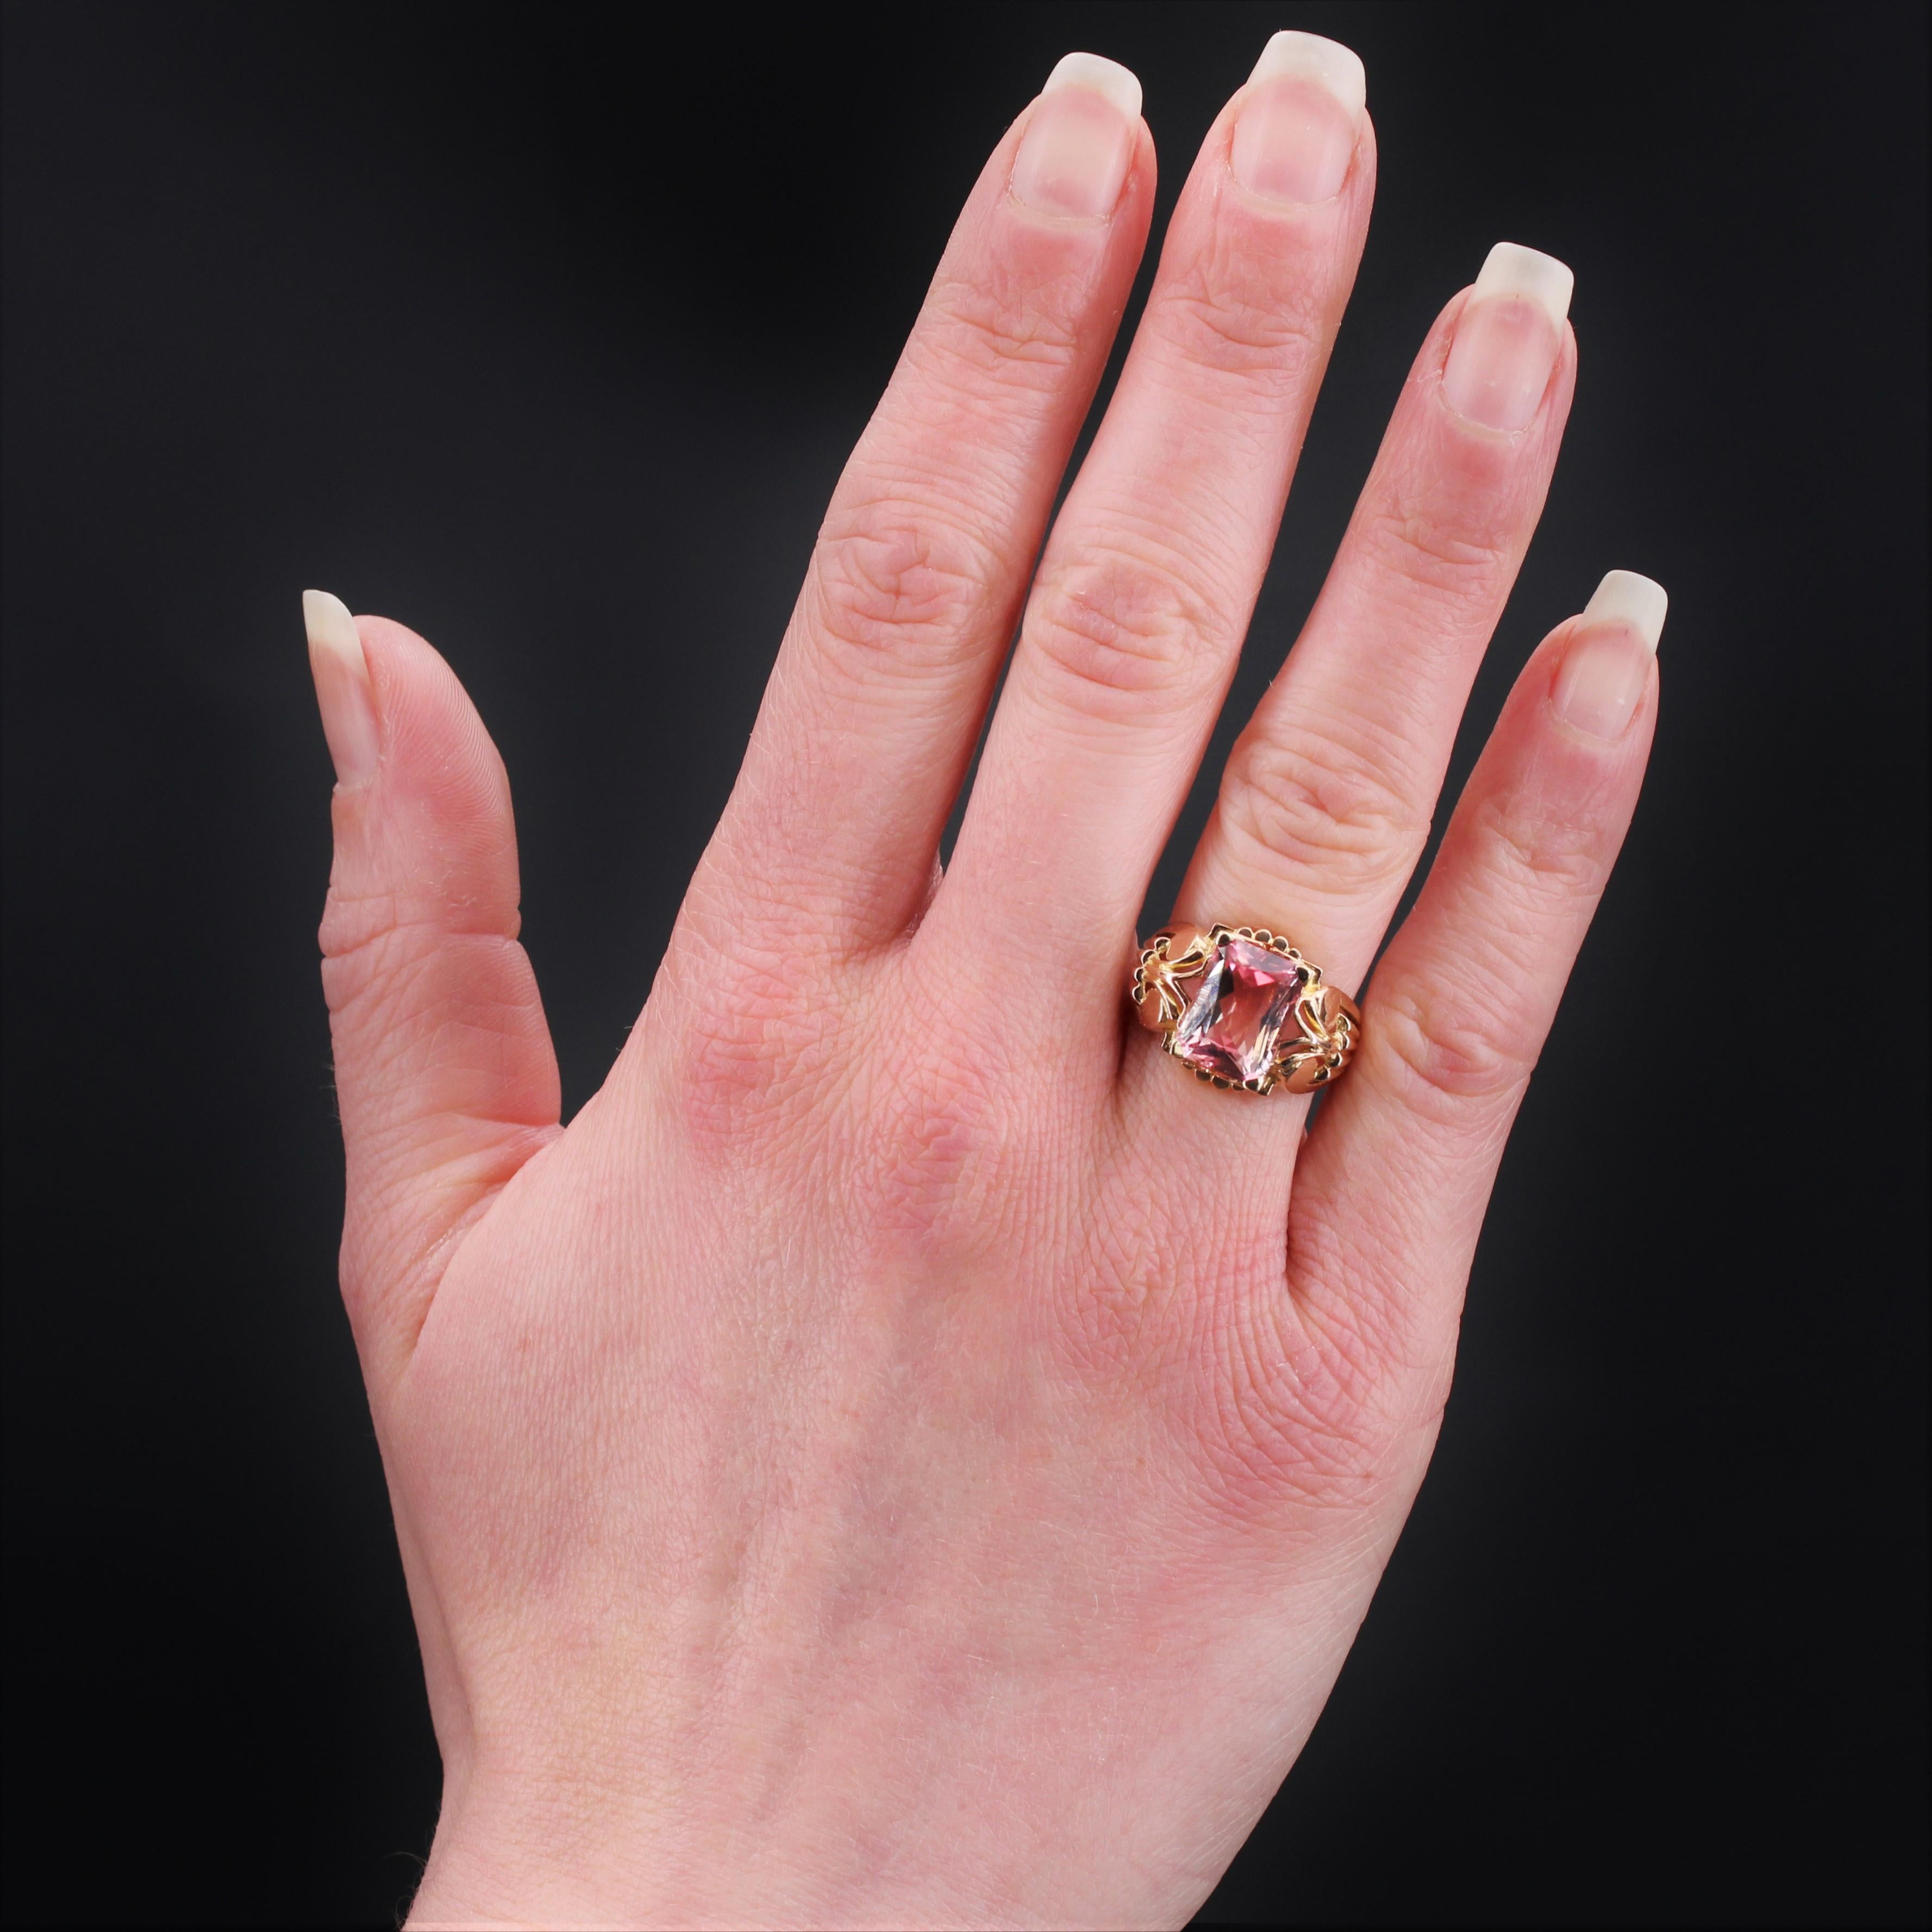 Ring aus 18 Karat Roségold, Adlerkopfpunze.
Origineller und eleganter Retro-Ring mit einer großen, leicht gewölbten, durchbrochenen Fassung, die auf einem herrlichen rechteckigen, mehrfarbigen Turmalin liegt, der von 4 Krallen gehalten